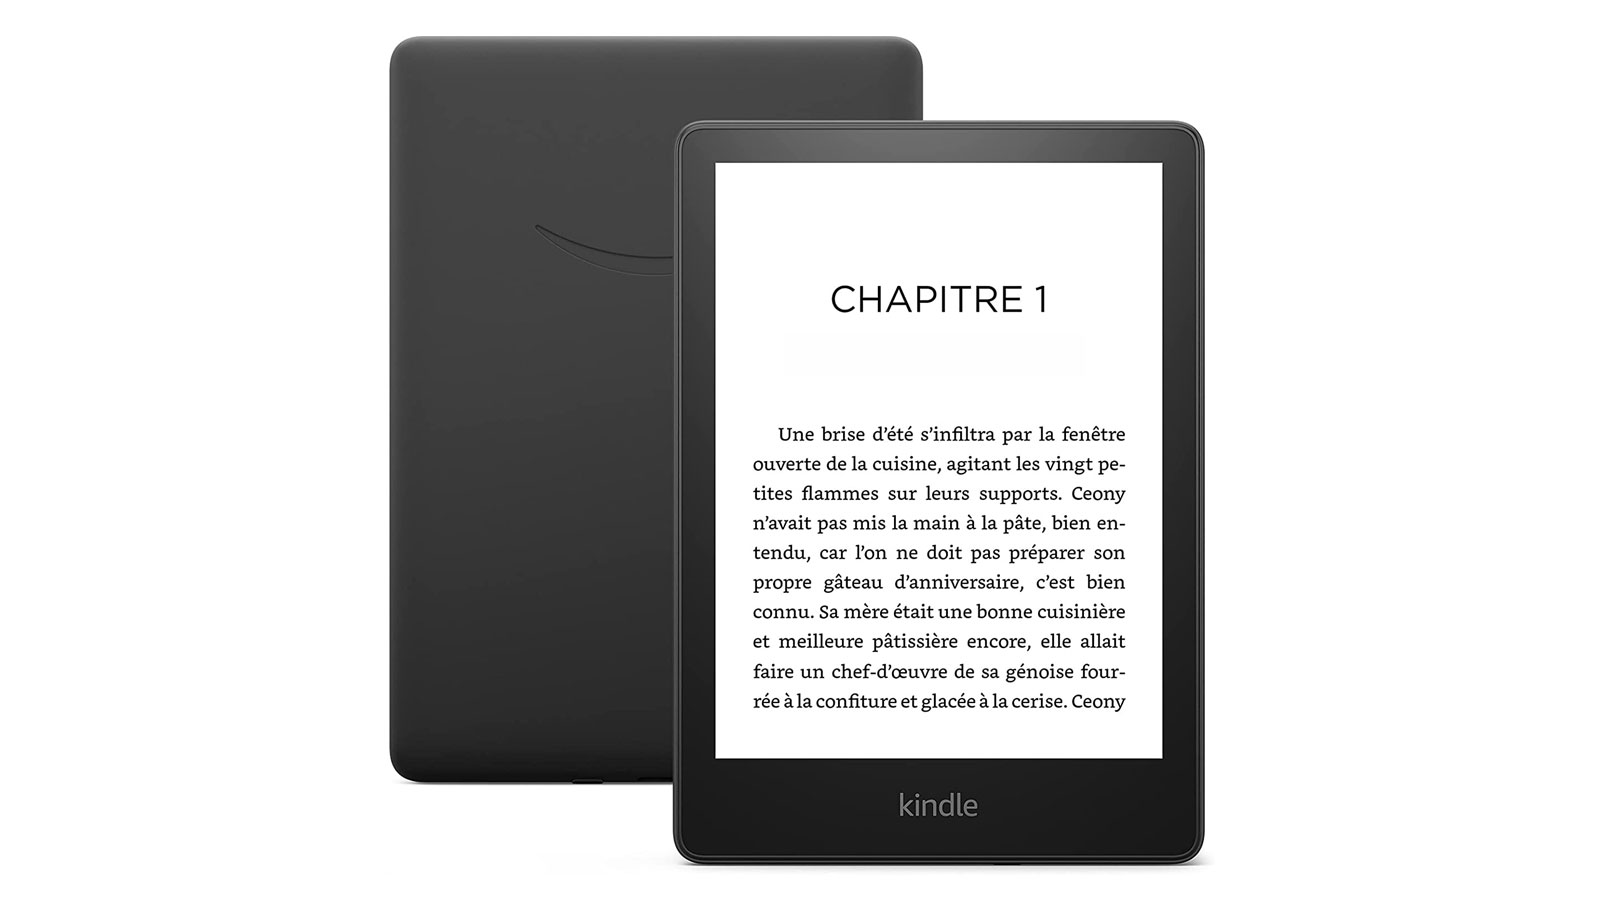 Les liseuses Kindle vont accepter le format ePub pour les livres